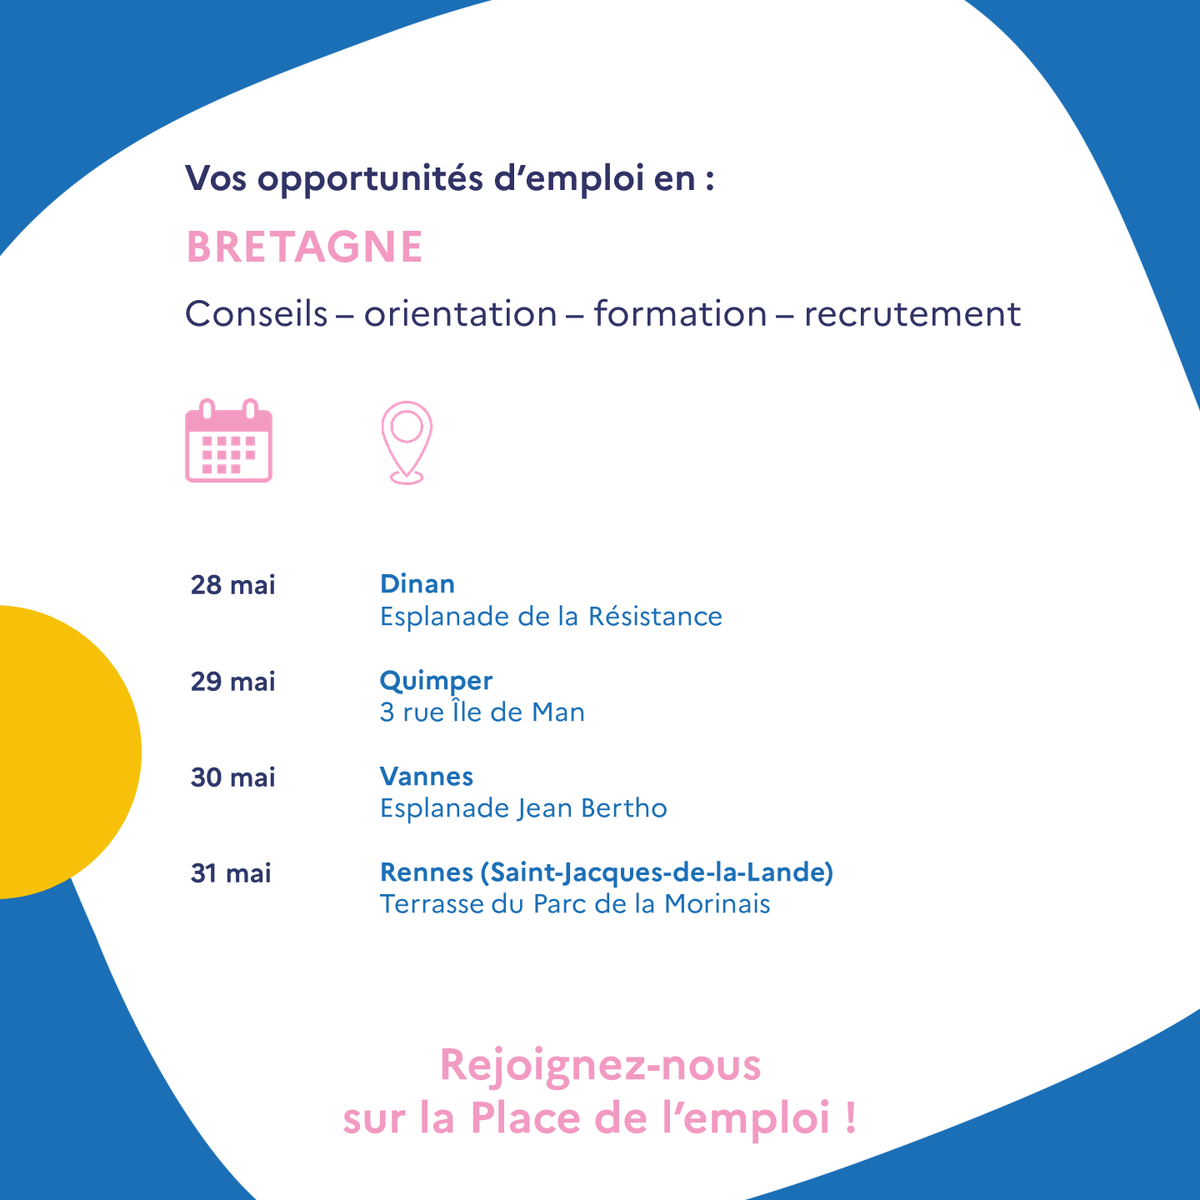 📣 Du 28 au 31 mai, @FranceTravail #Bretagne et ses partenaires organisent l'événement 'Place de l'emploi' dans 4 villes bretonnes.
Un événement gratuit pour faire se rencontrer personnes en recherche d'#emploi, recruteurs et acteurs du territoire
francetravail.fr/region/bretagn…